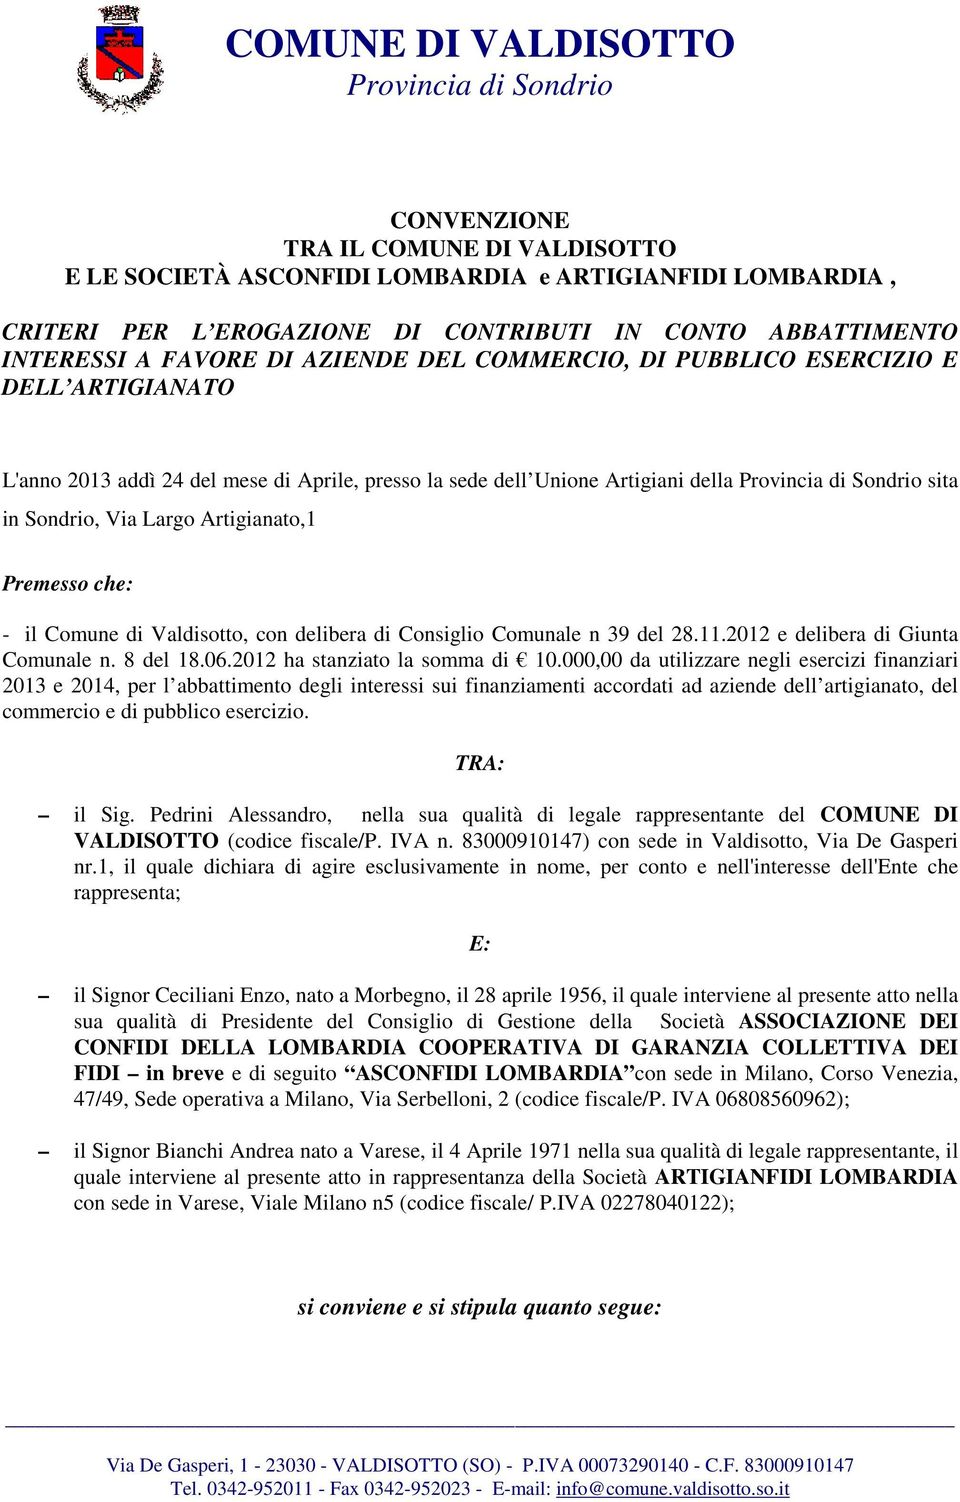 Comune di Valdisotto, con delibera di Consiglio Comunale n 39 del 28.11.2012 e delibera di Giunta Comunale n. 8 del 18.06.2012 ha stanziato la somma di 10.